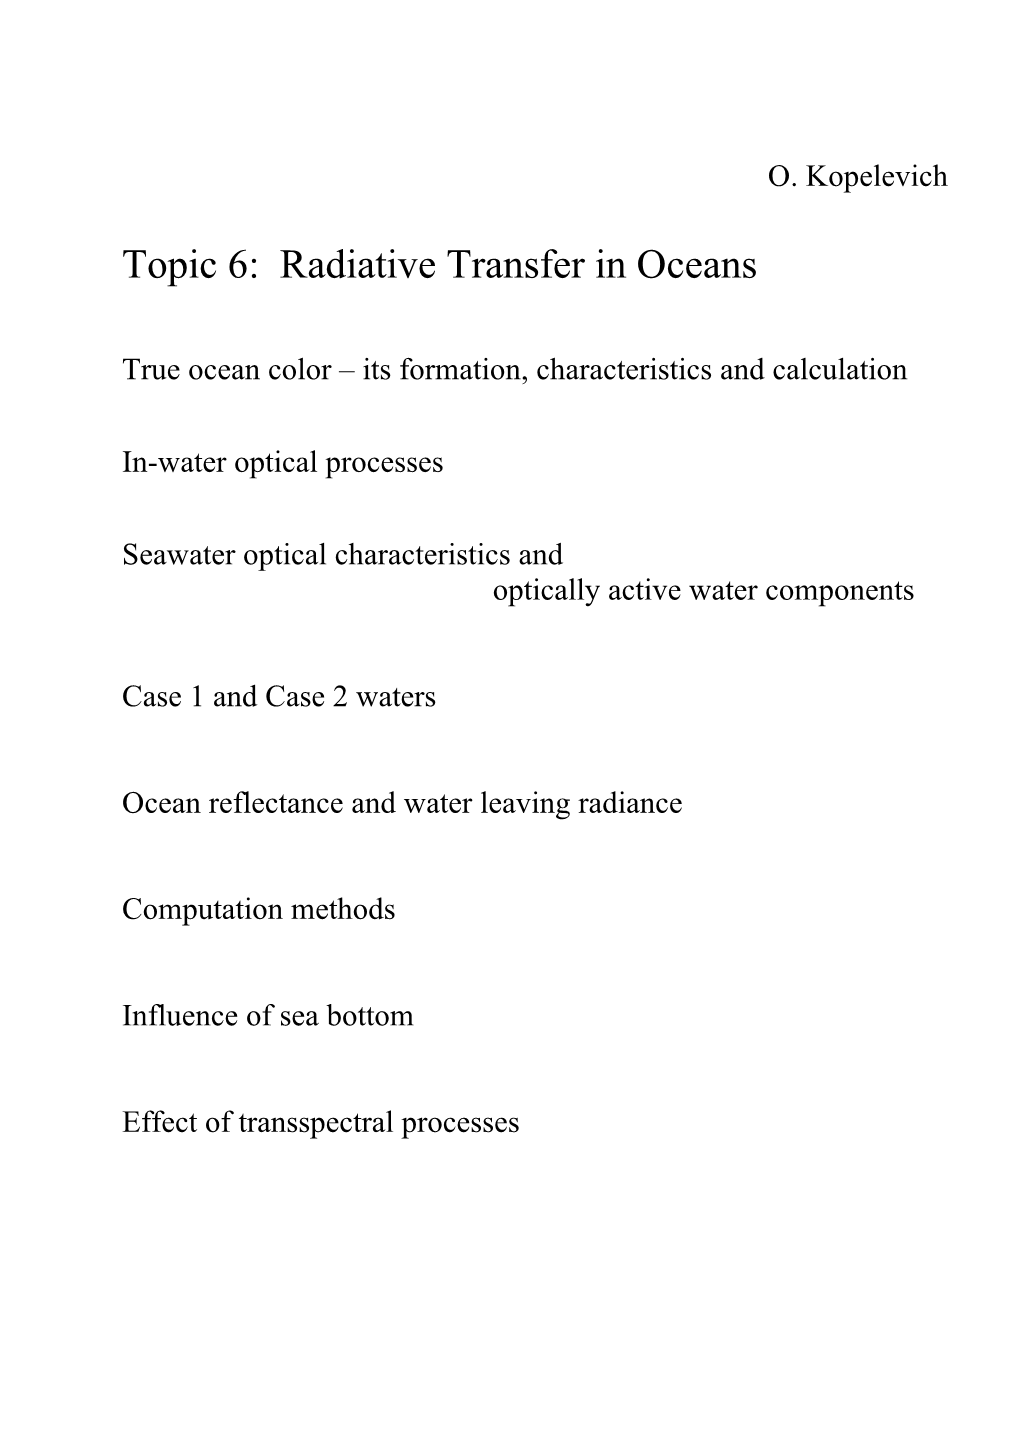 Topic 6: Radiative Transfer in Oceans